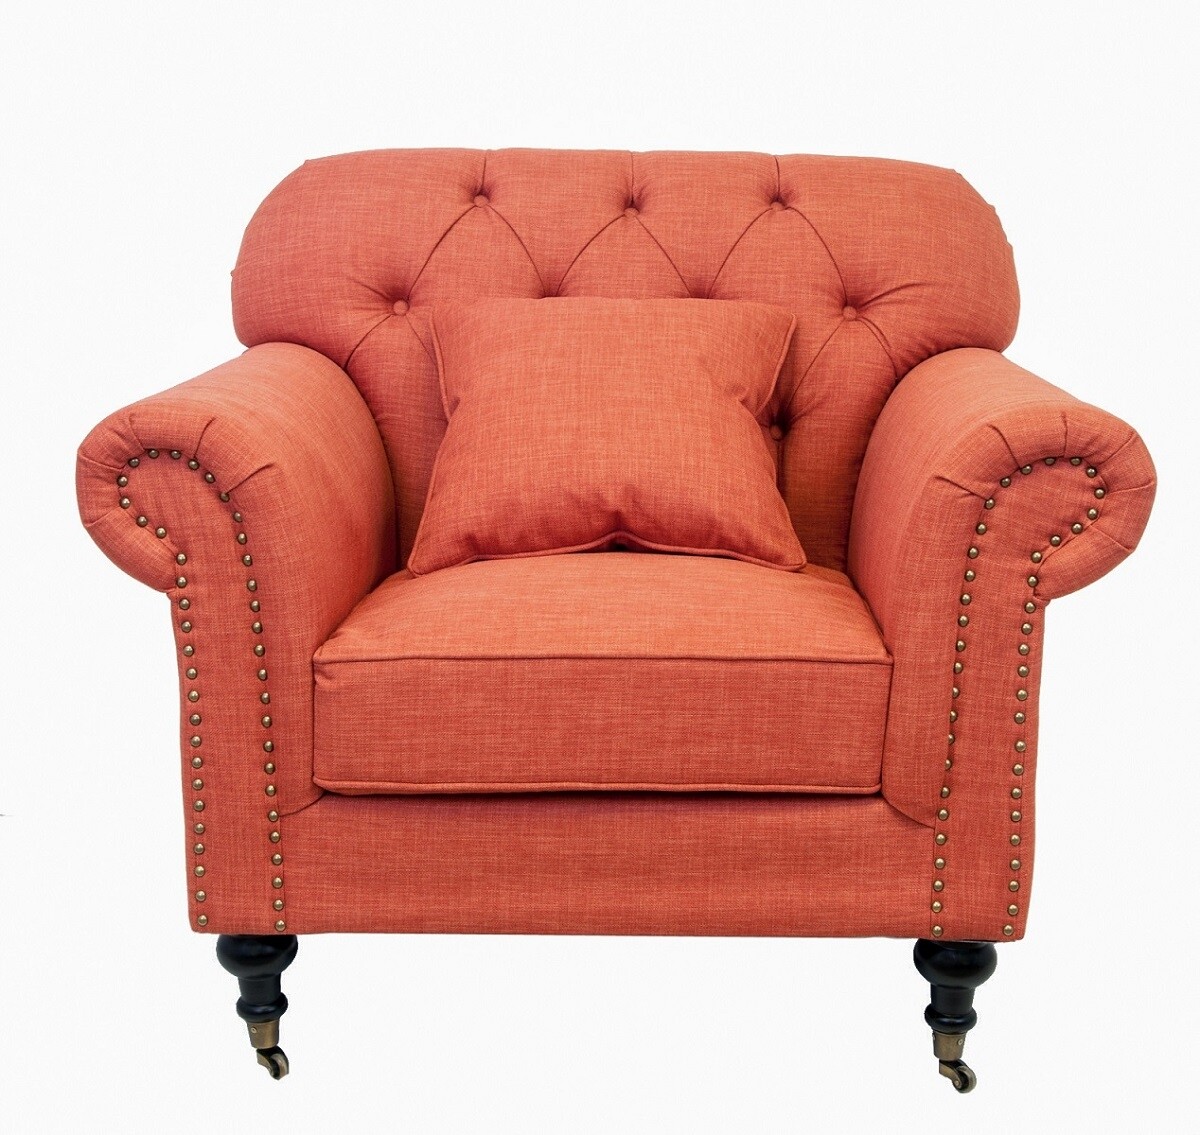 Кресло с мягкими подлокотниками на колесиках оранжевое Kavita orange